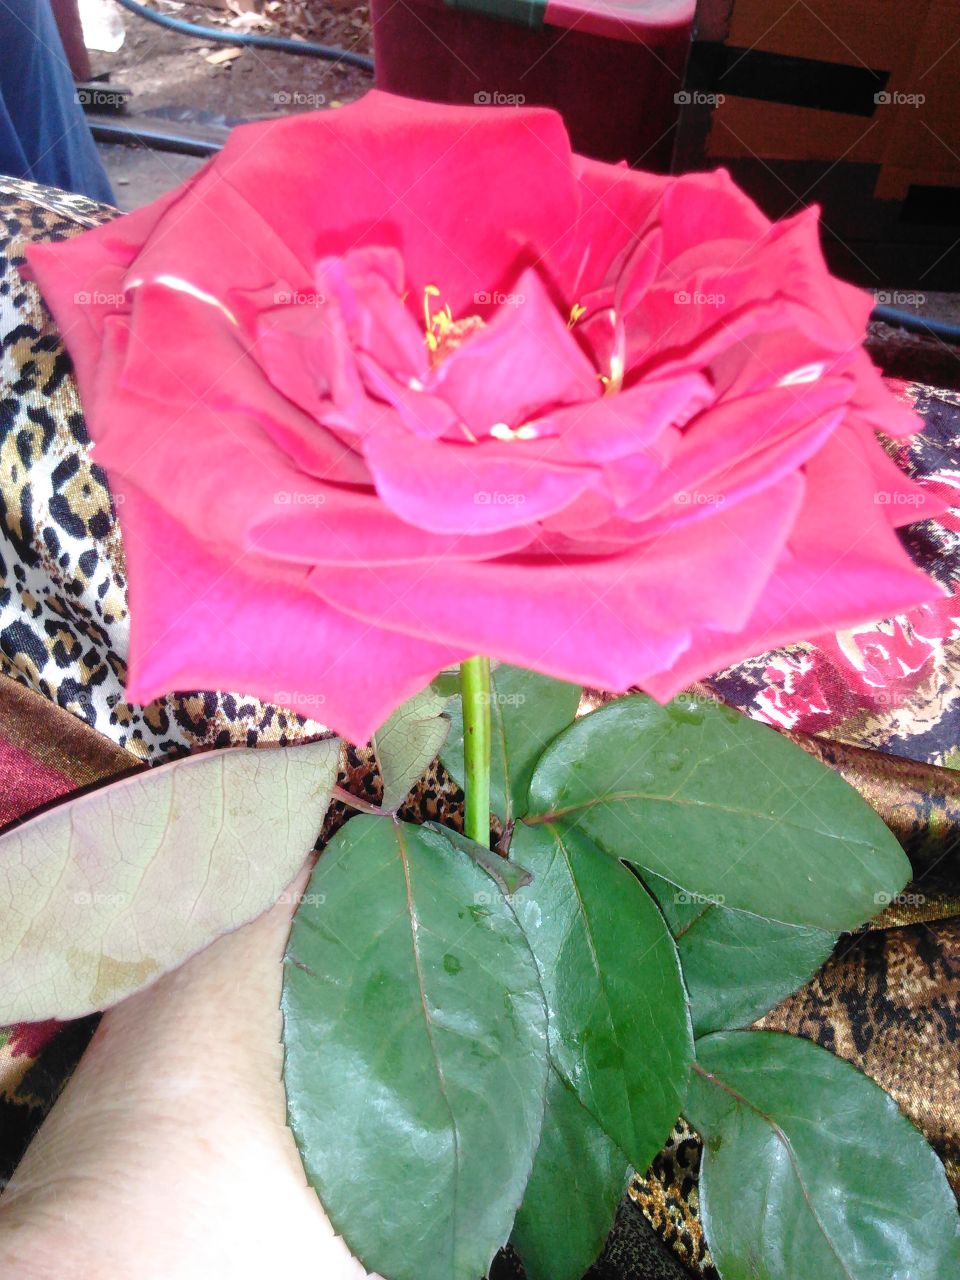 Pretty pretty red Rose